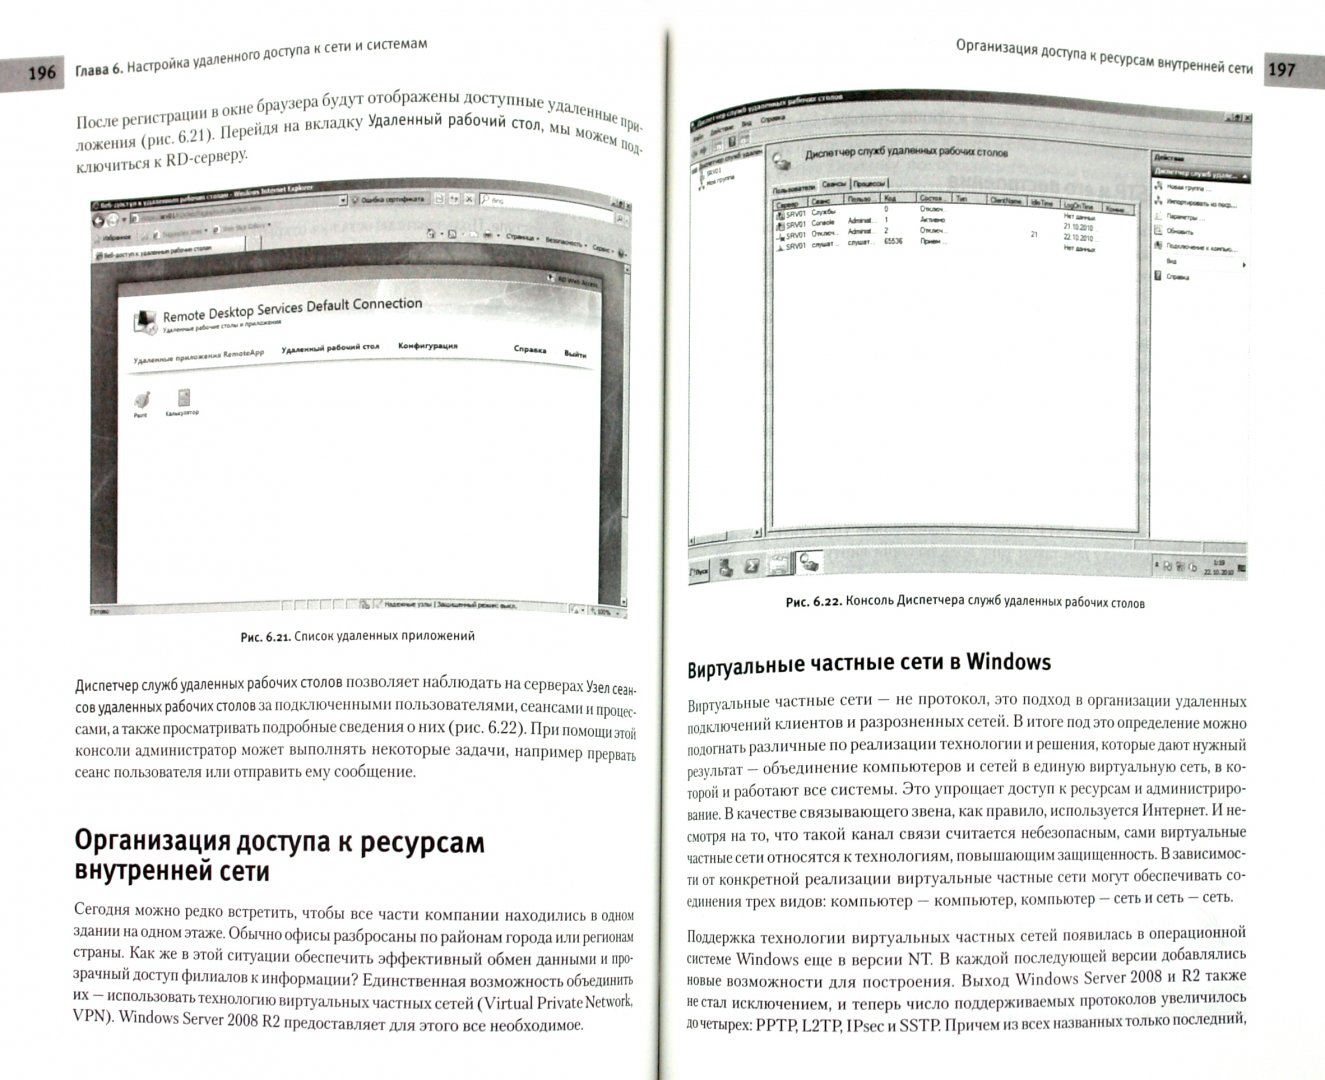 Иллюстрация 1 из 20 для Системное администрирование Windows 7 и Windows Server 2008 R2 на 100% - Яремчук, Матвеев | Лабиринт - книги. Источник: Лабиринт